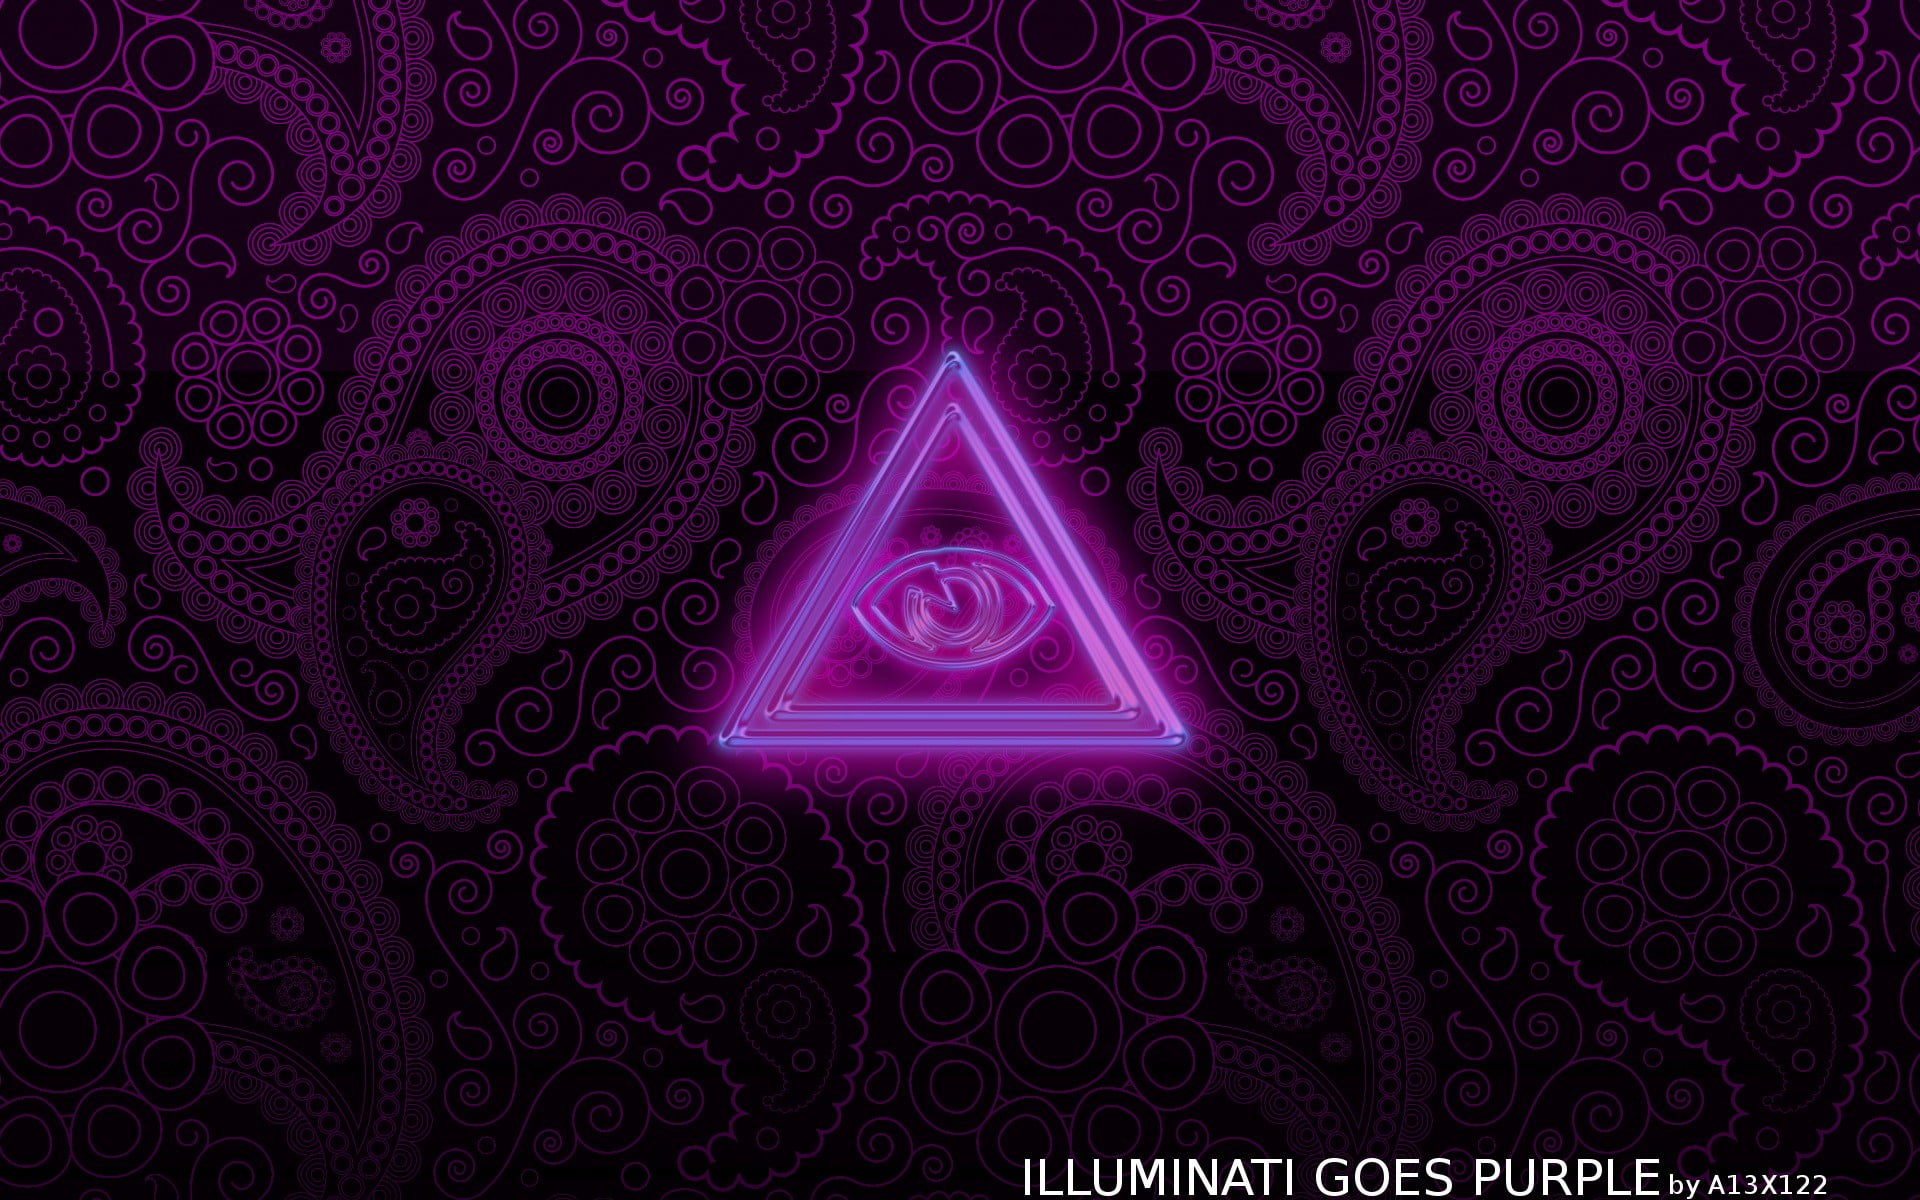 Illuminati goes purple illustration